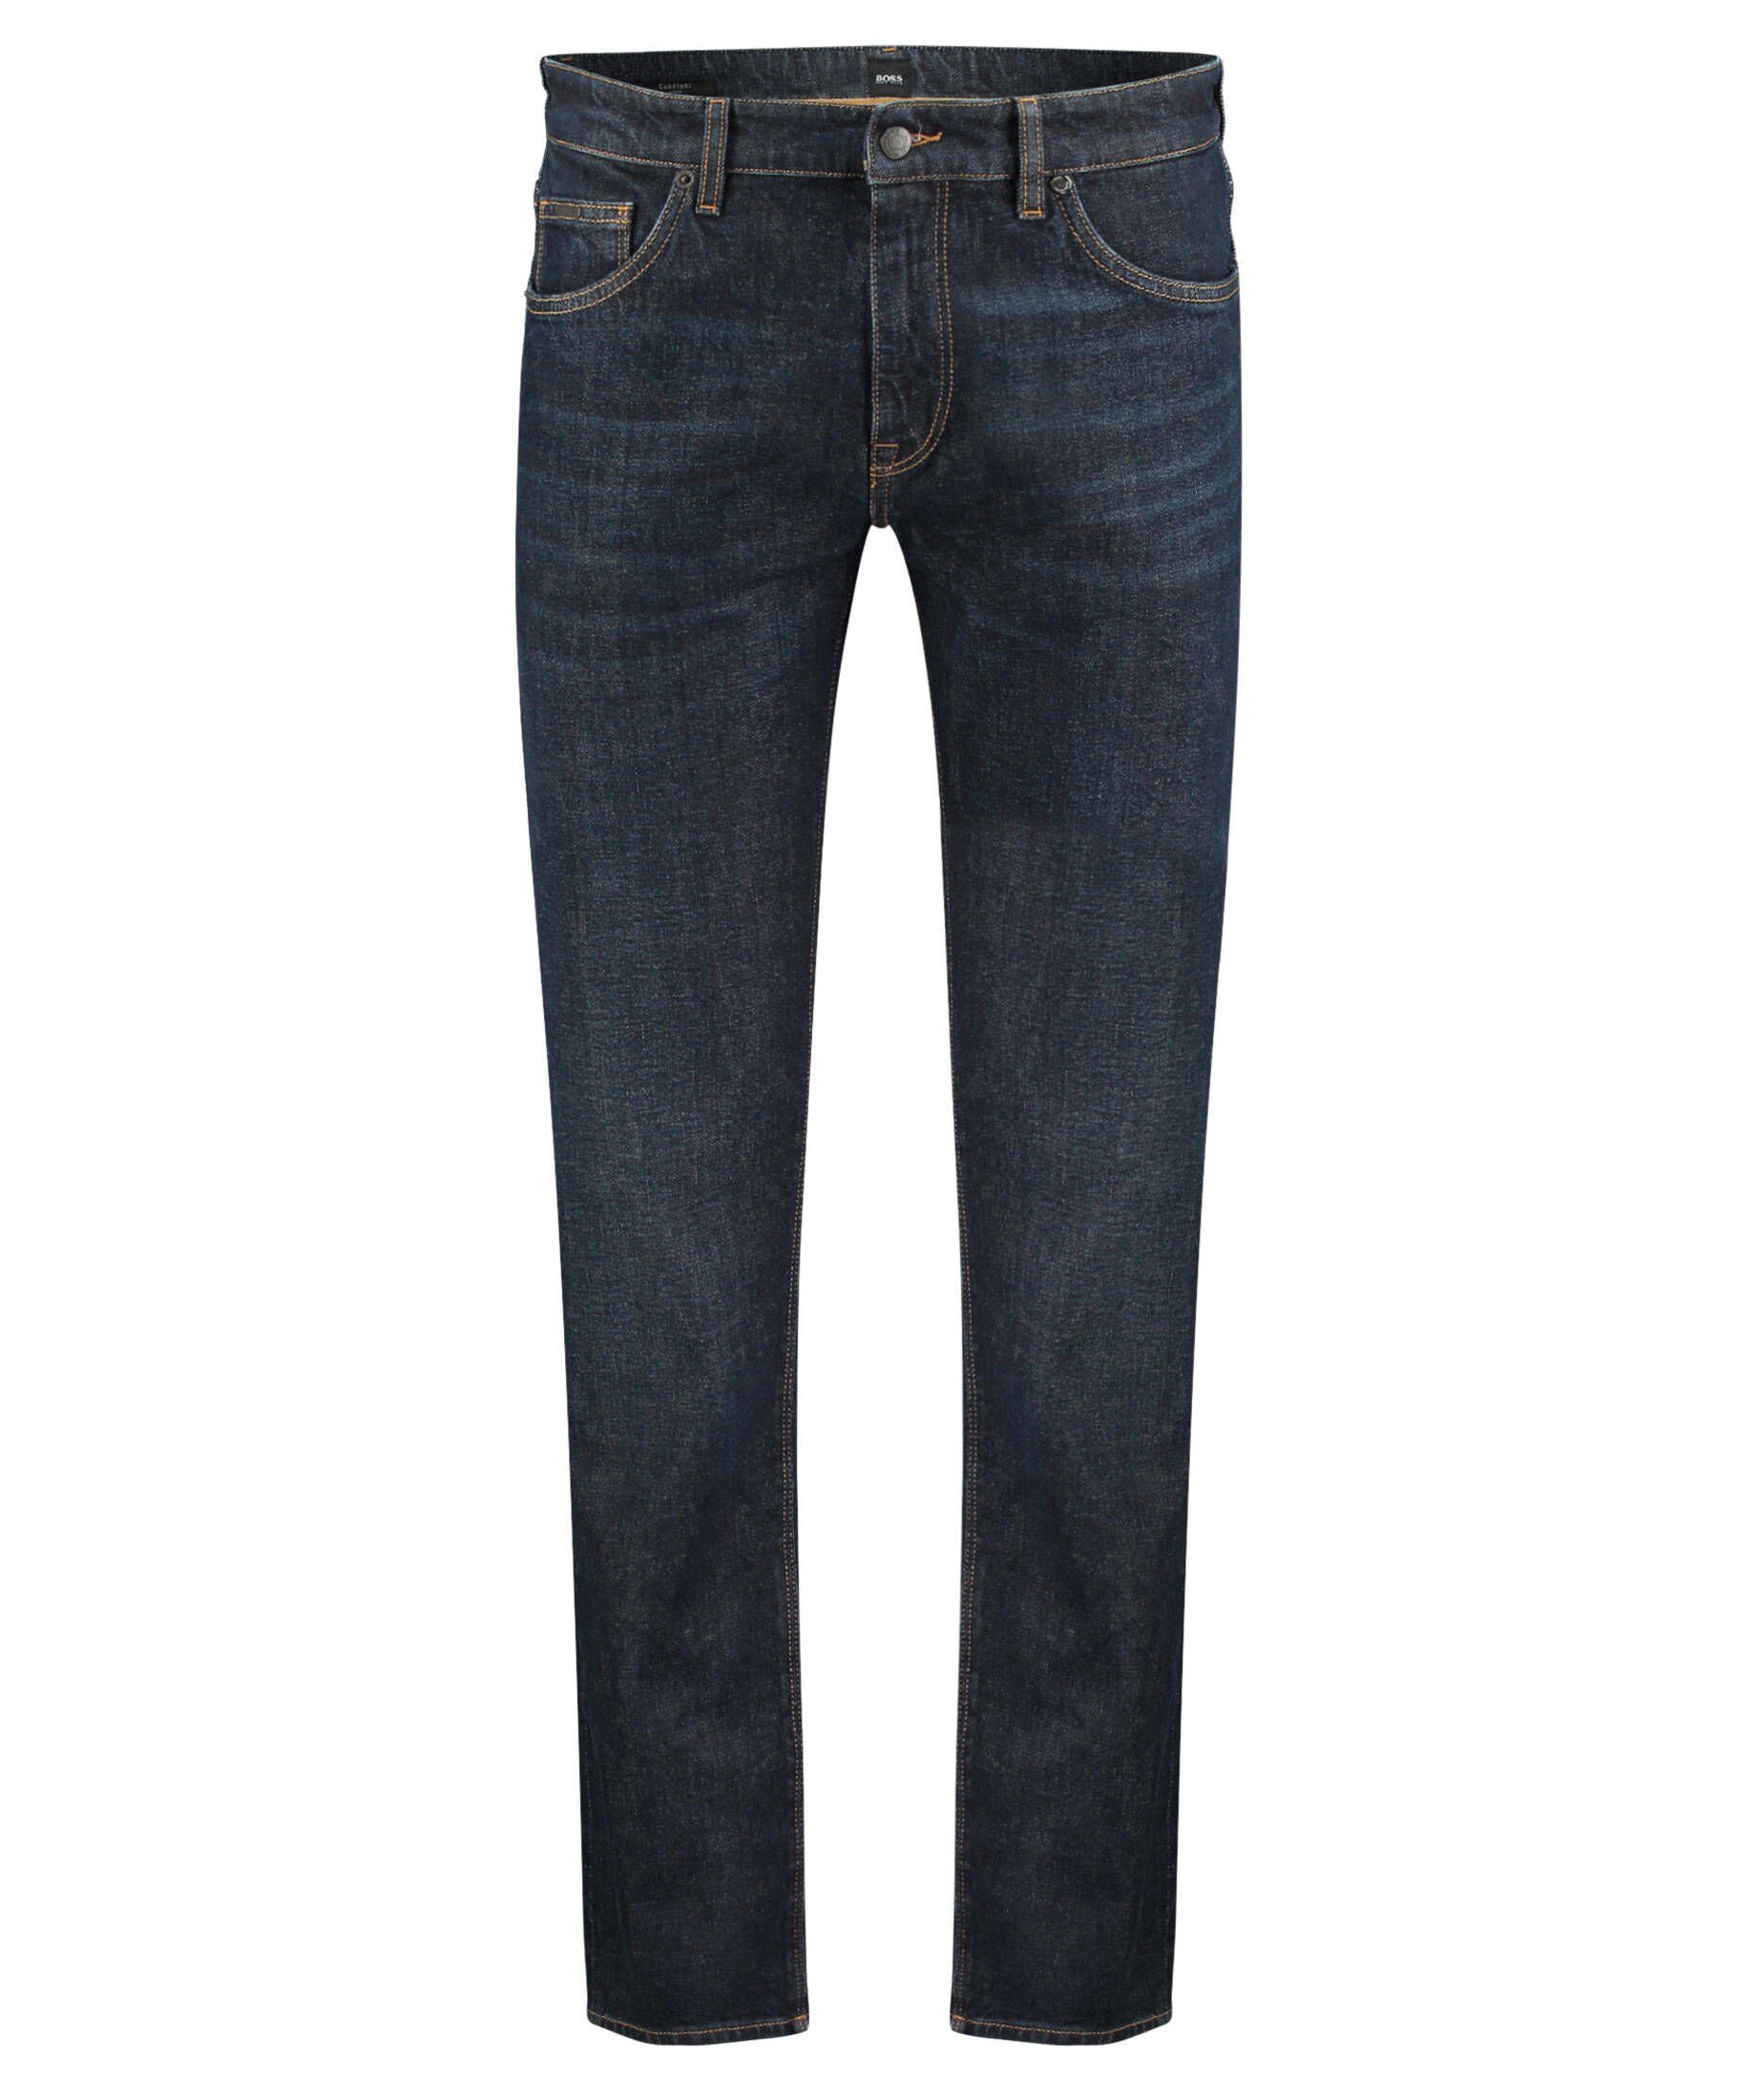 BOSS 5-Pocket-Jeans »Herren Jeans MAINE Regular Fit« online kaufen | OTTO